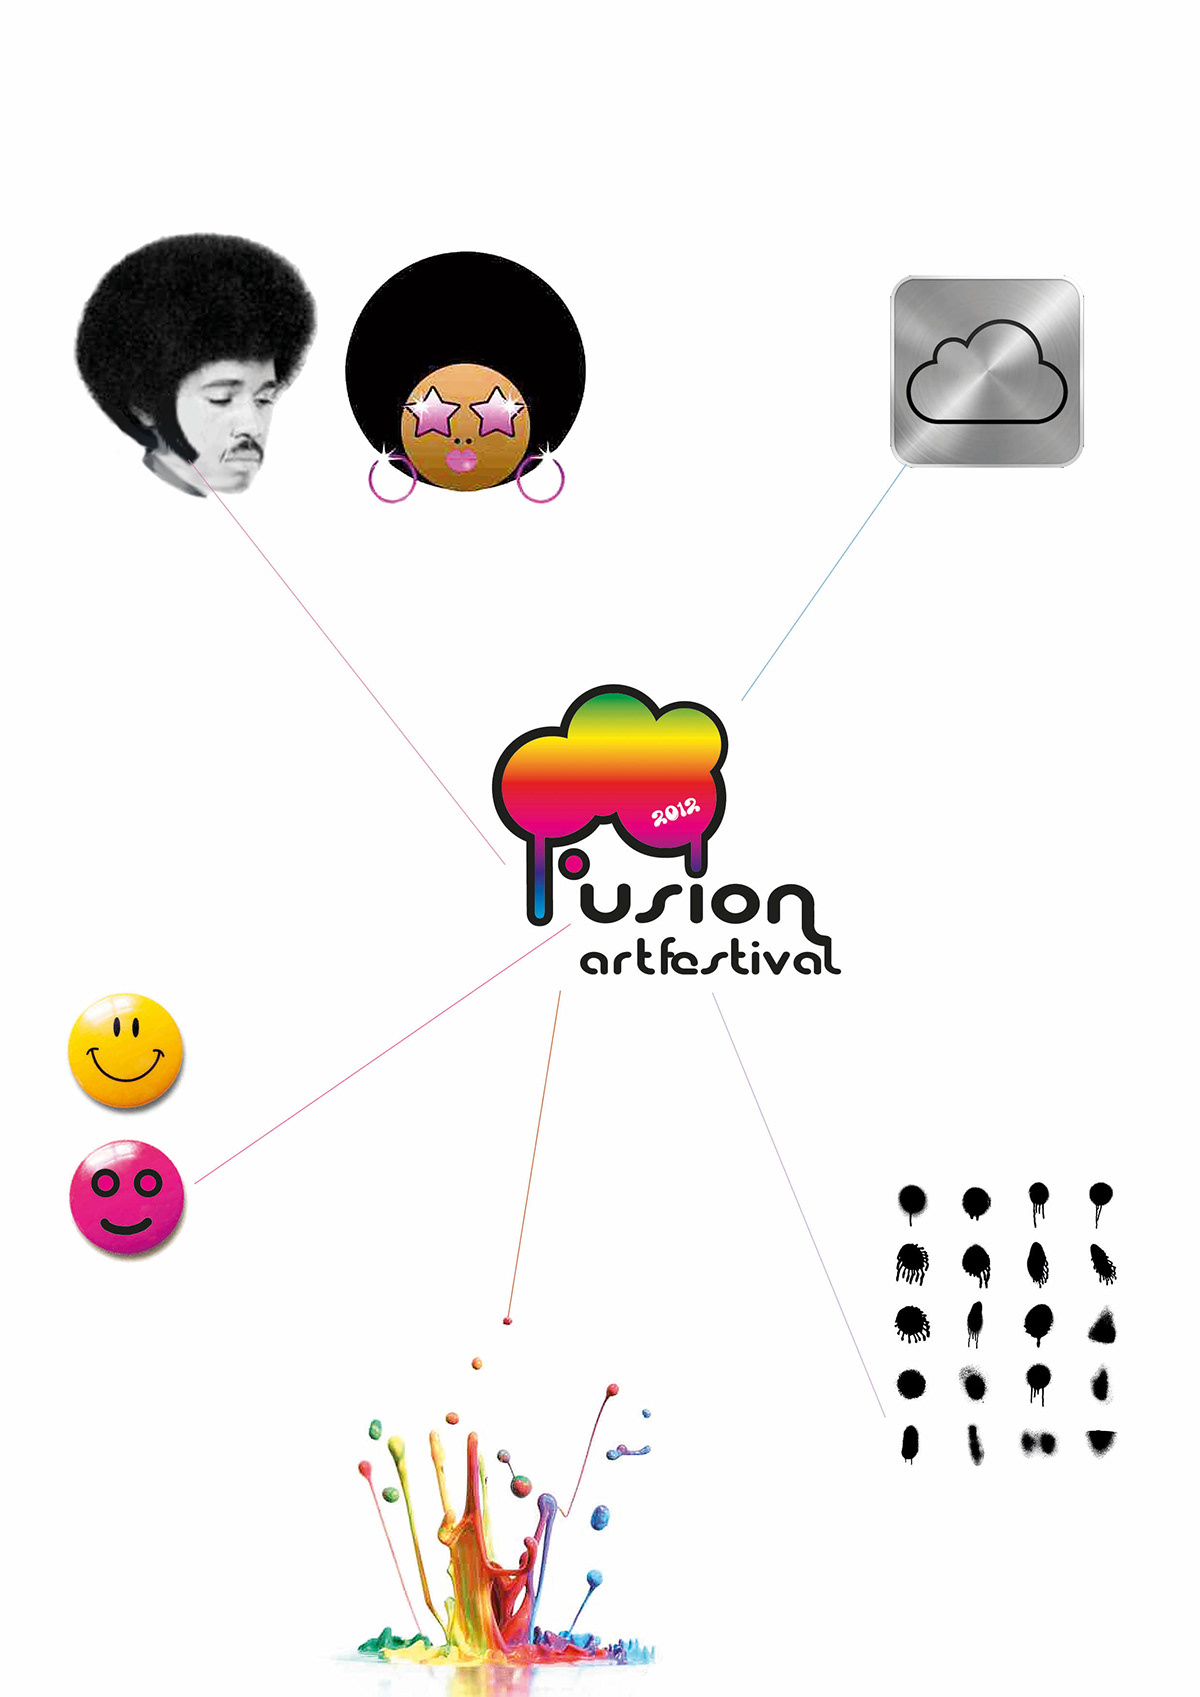 logo  Formanuova  fusion festival art Shura baggio